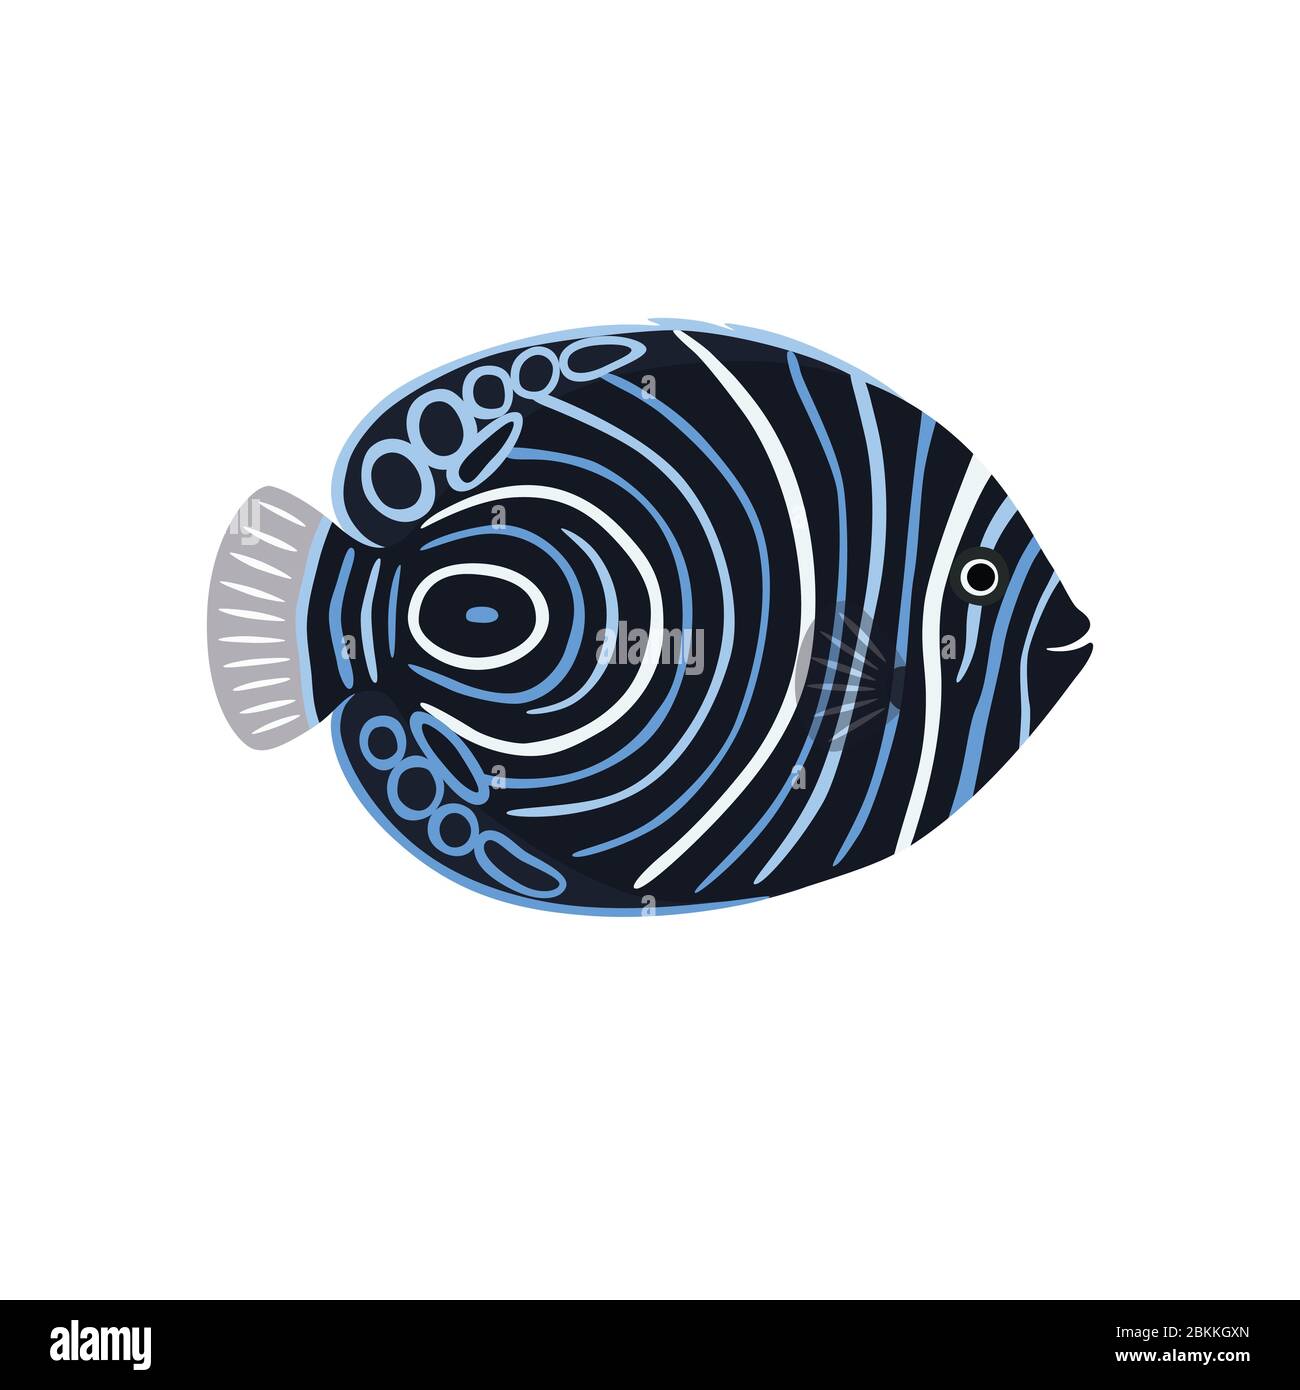 Fish is dark emperor angelfish vector illustration Stock Vector